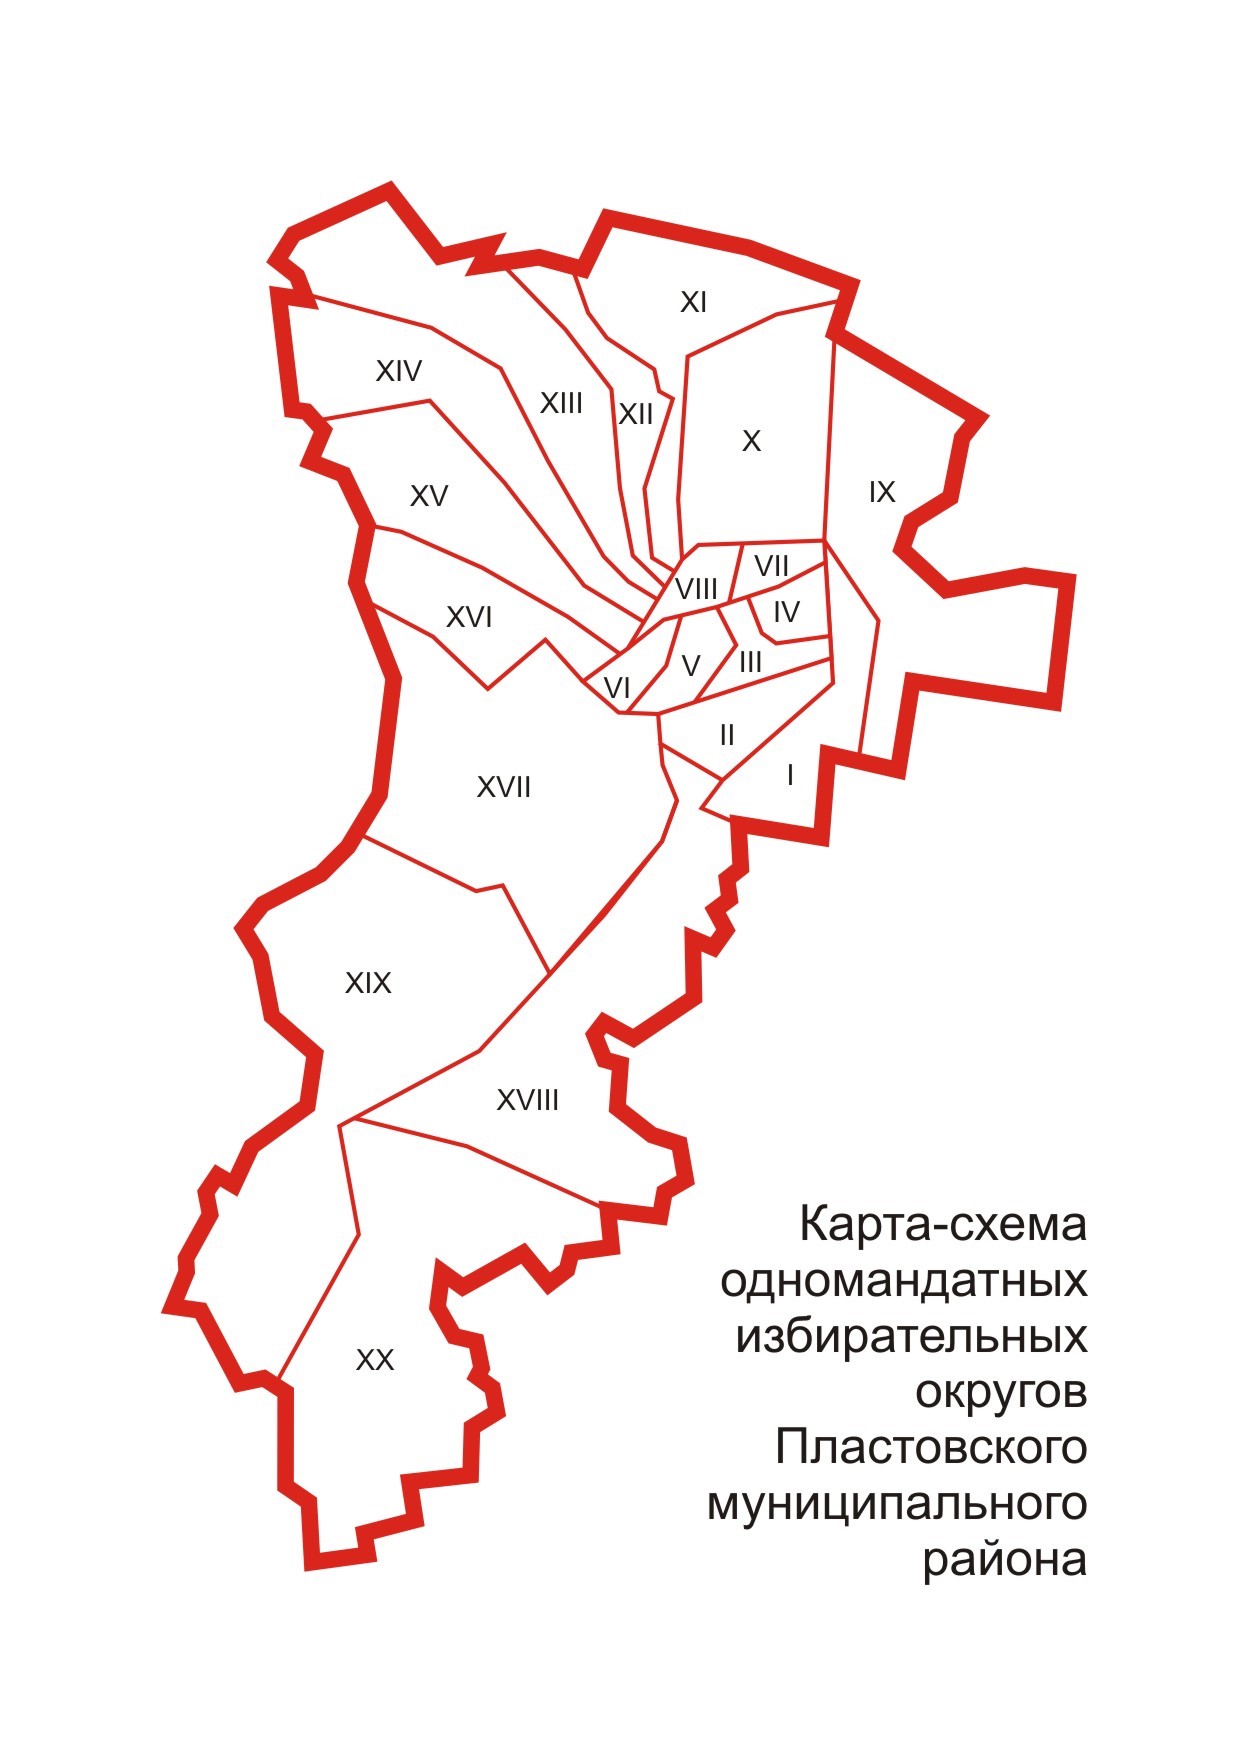 Графическая схема избирательных округов Пластовского района Челябинской области